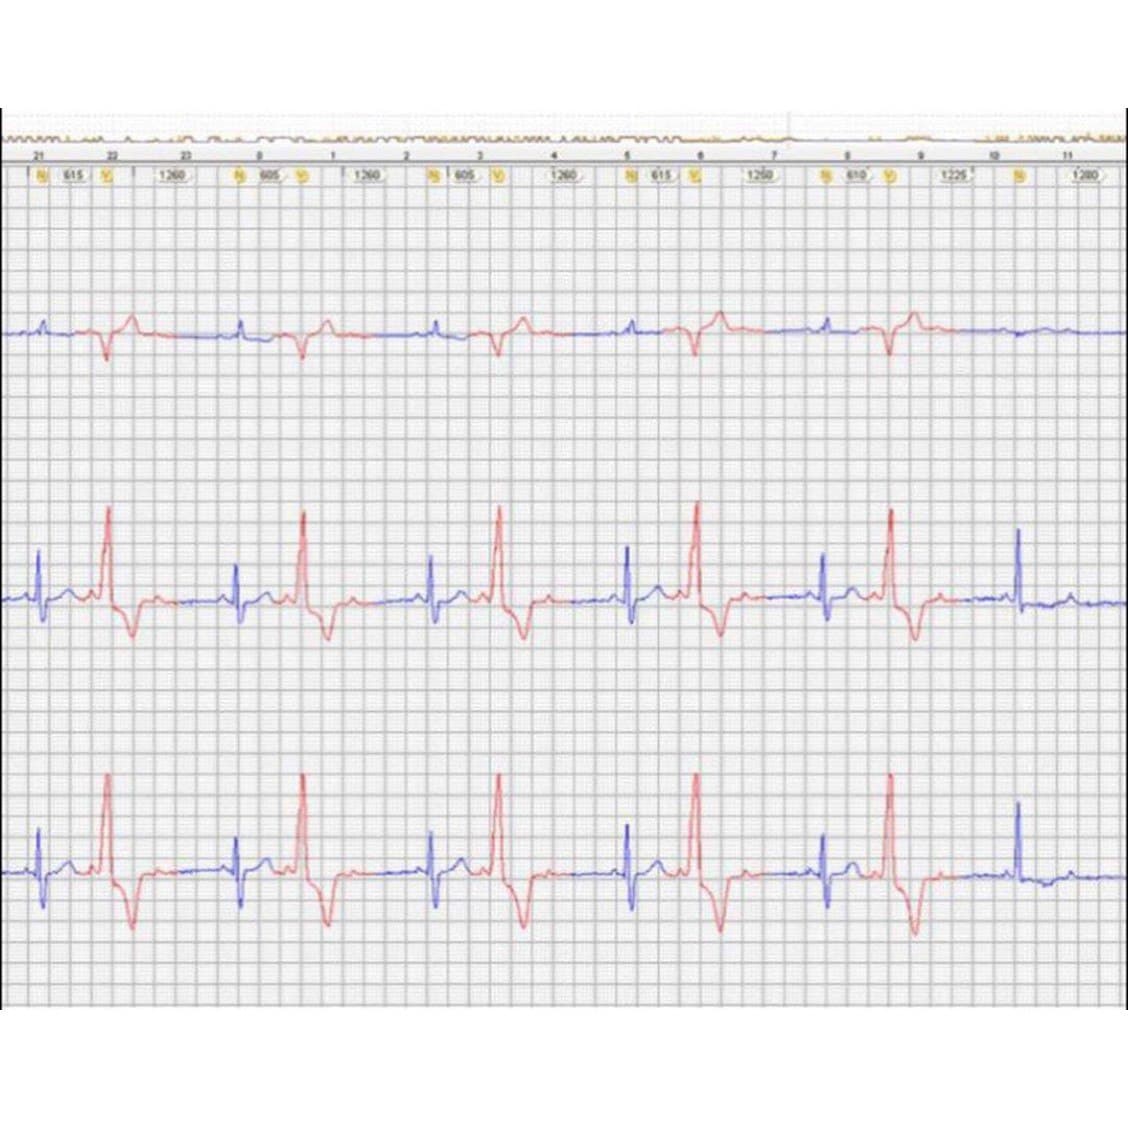 Trazado de Holter que muestra BAV 3:2 y desarrollo de taquicardia con Bloqueo en fase 3 por probable bloqueo infrahisiano